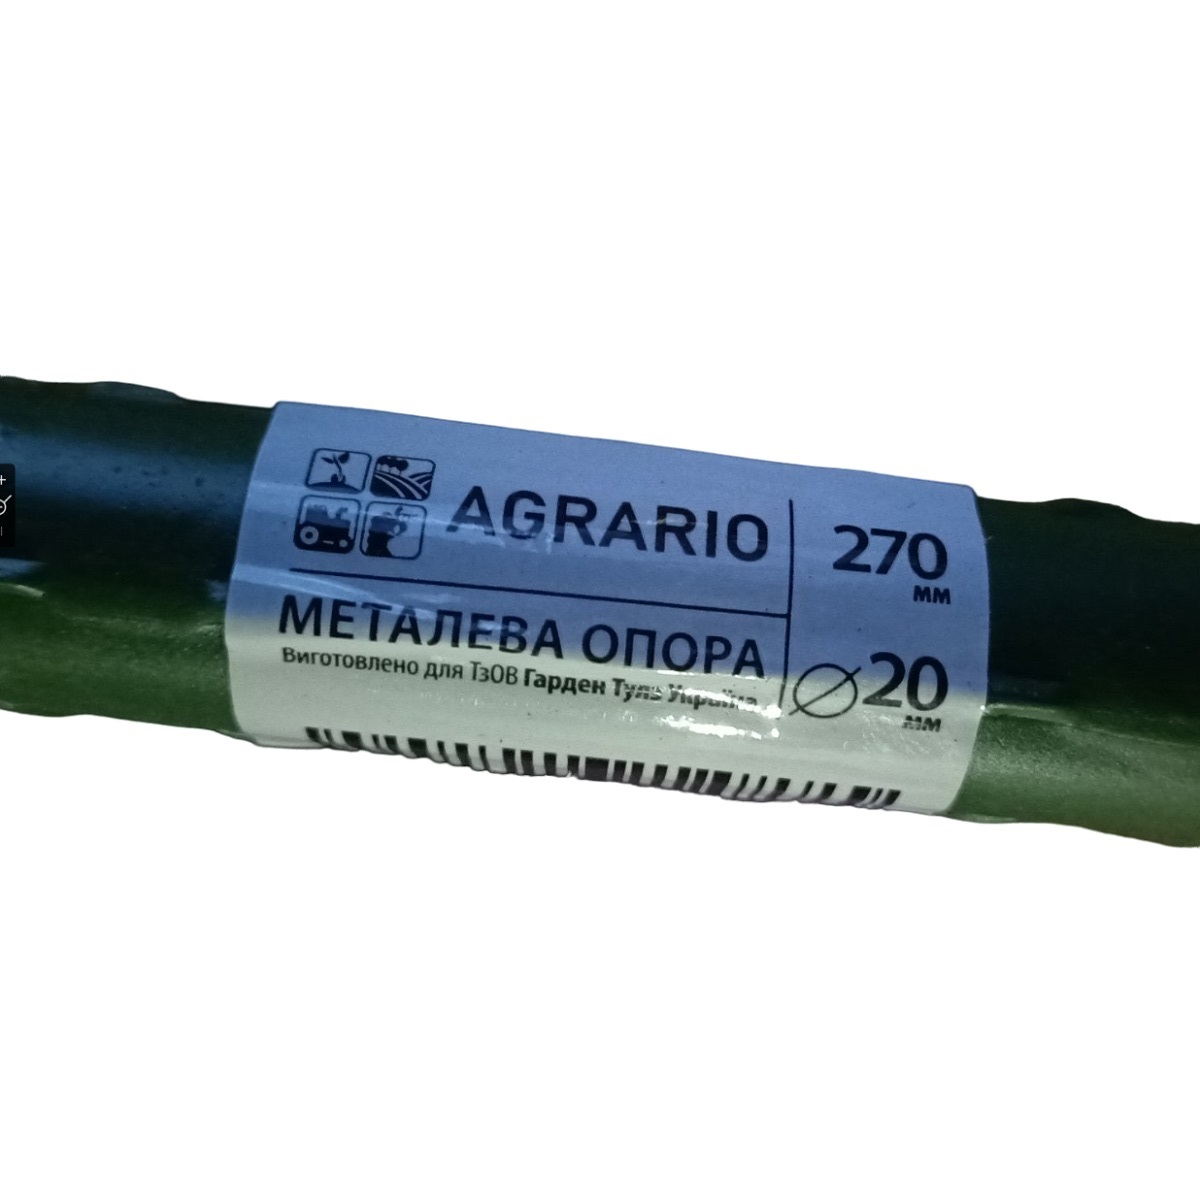 Металлическая опора для растений Agrario 8-120 с пластиковым покрытием 8 мм х 1,2 м / Аграрио 8-120